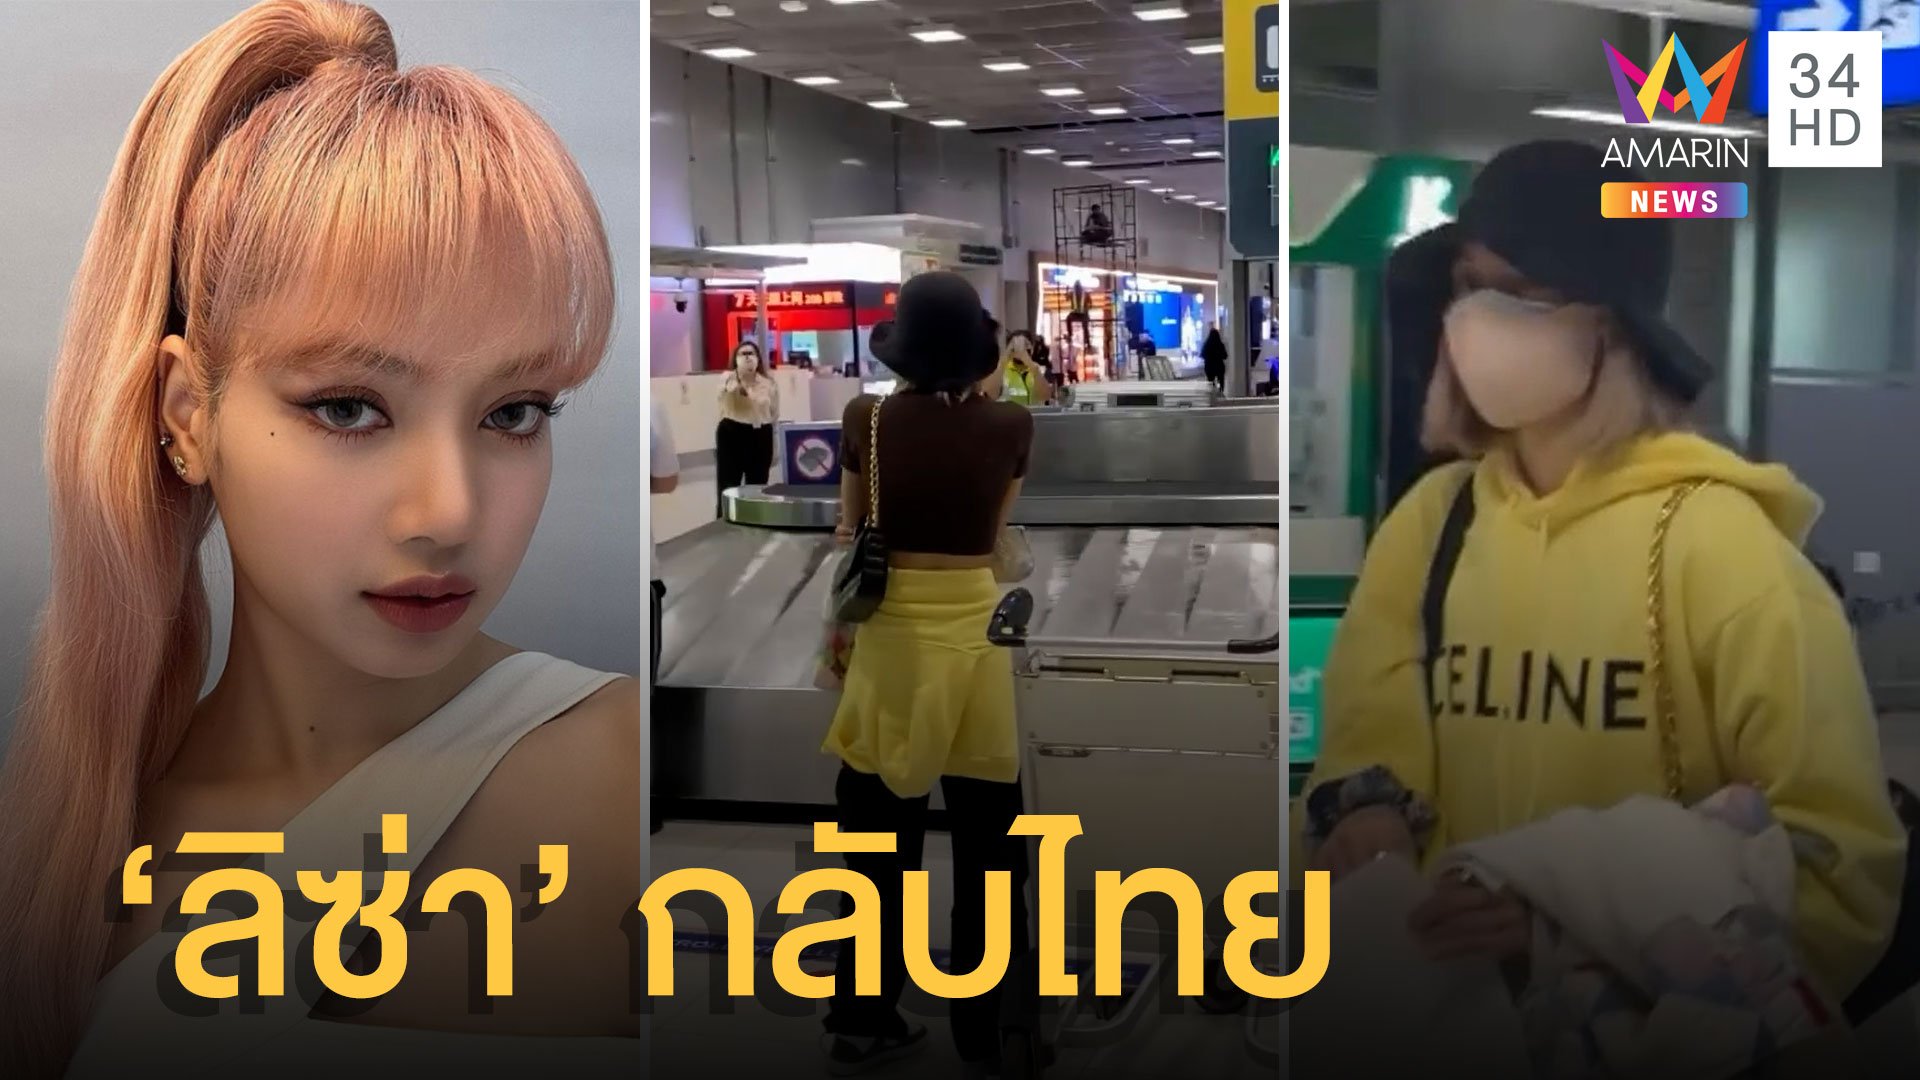 มีนาแล้วมีลิซ่าด้วย! "ลิซ่า Blackpink" กลับไทยรอบ 3 ปี แฟนคลับปลื้มมาก | ข่าวอรุณอมรินทร์ | 23 มี.ค. 65 | AMARIN TVHD34